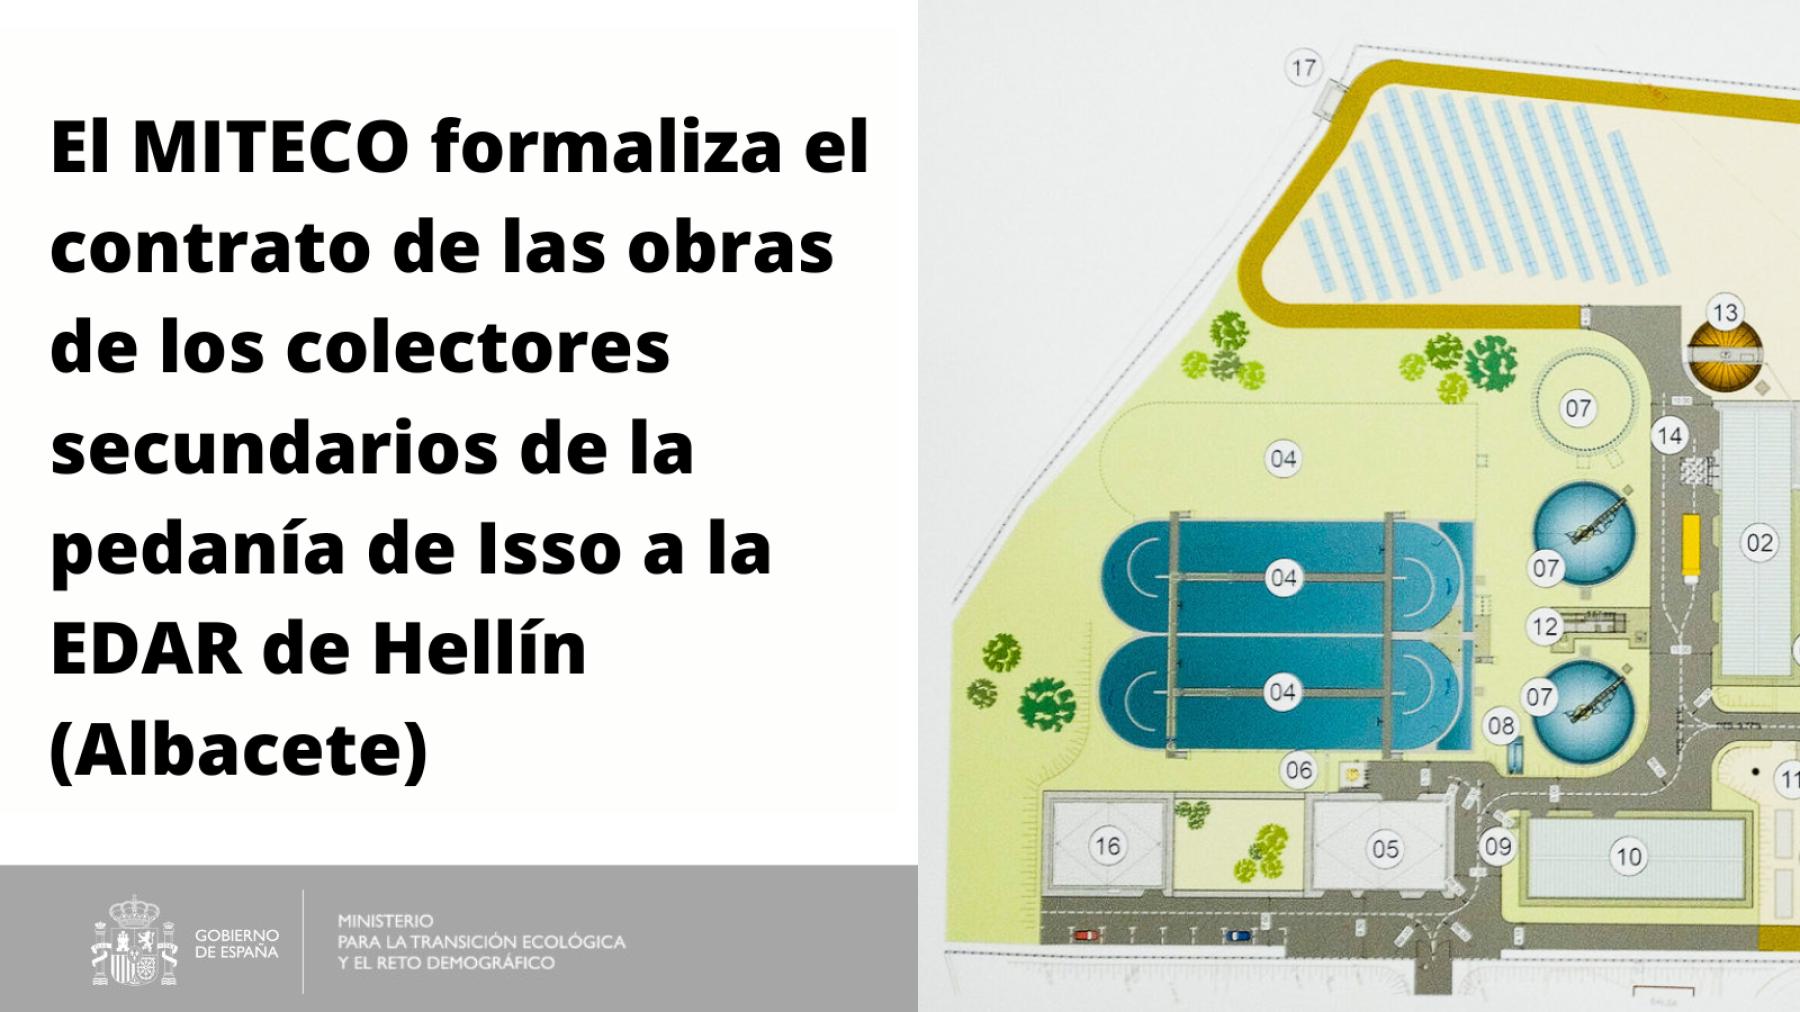 El MITECO formaliza el contrato de las obras de los colectores secundarios de la pedanía de Isso a la EDAR de Hellín (Albacete)